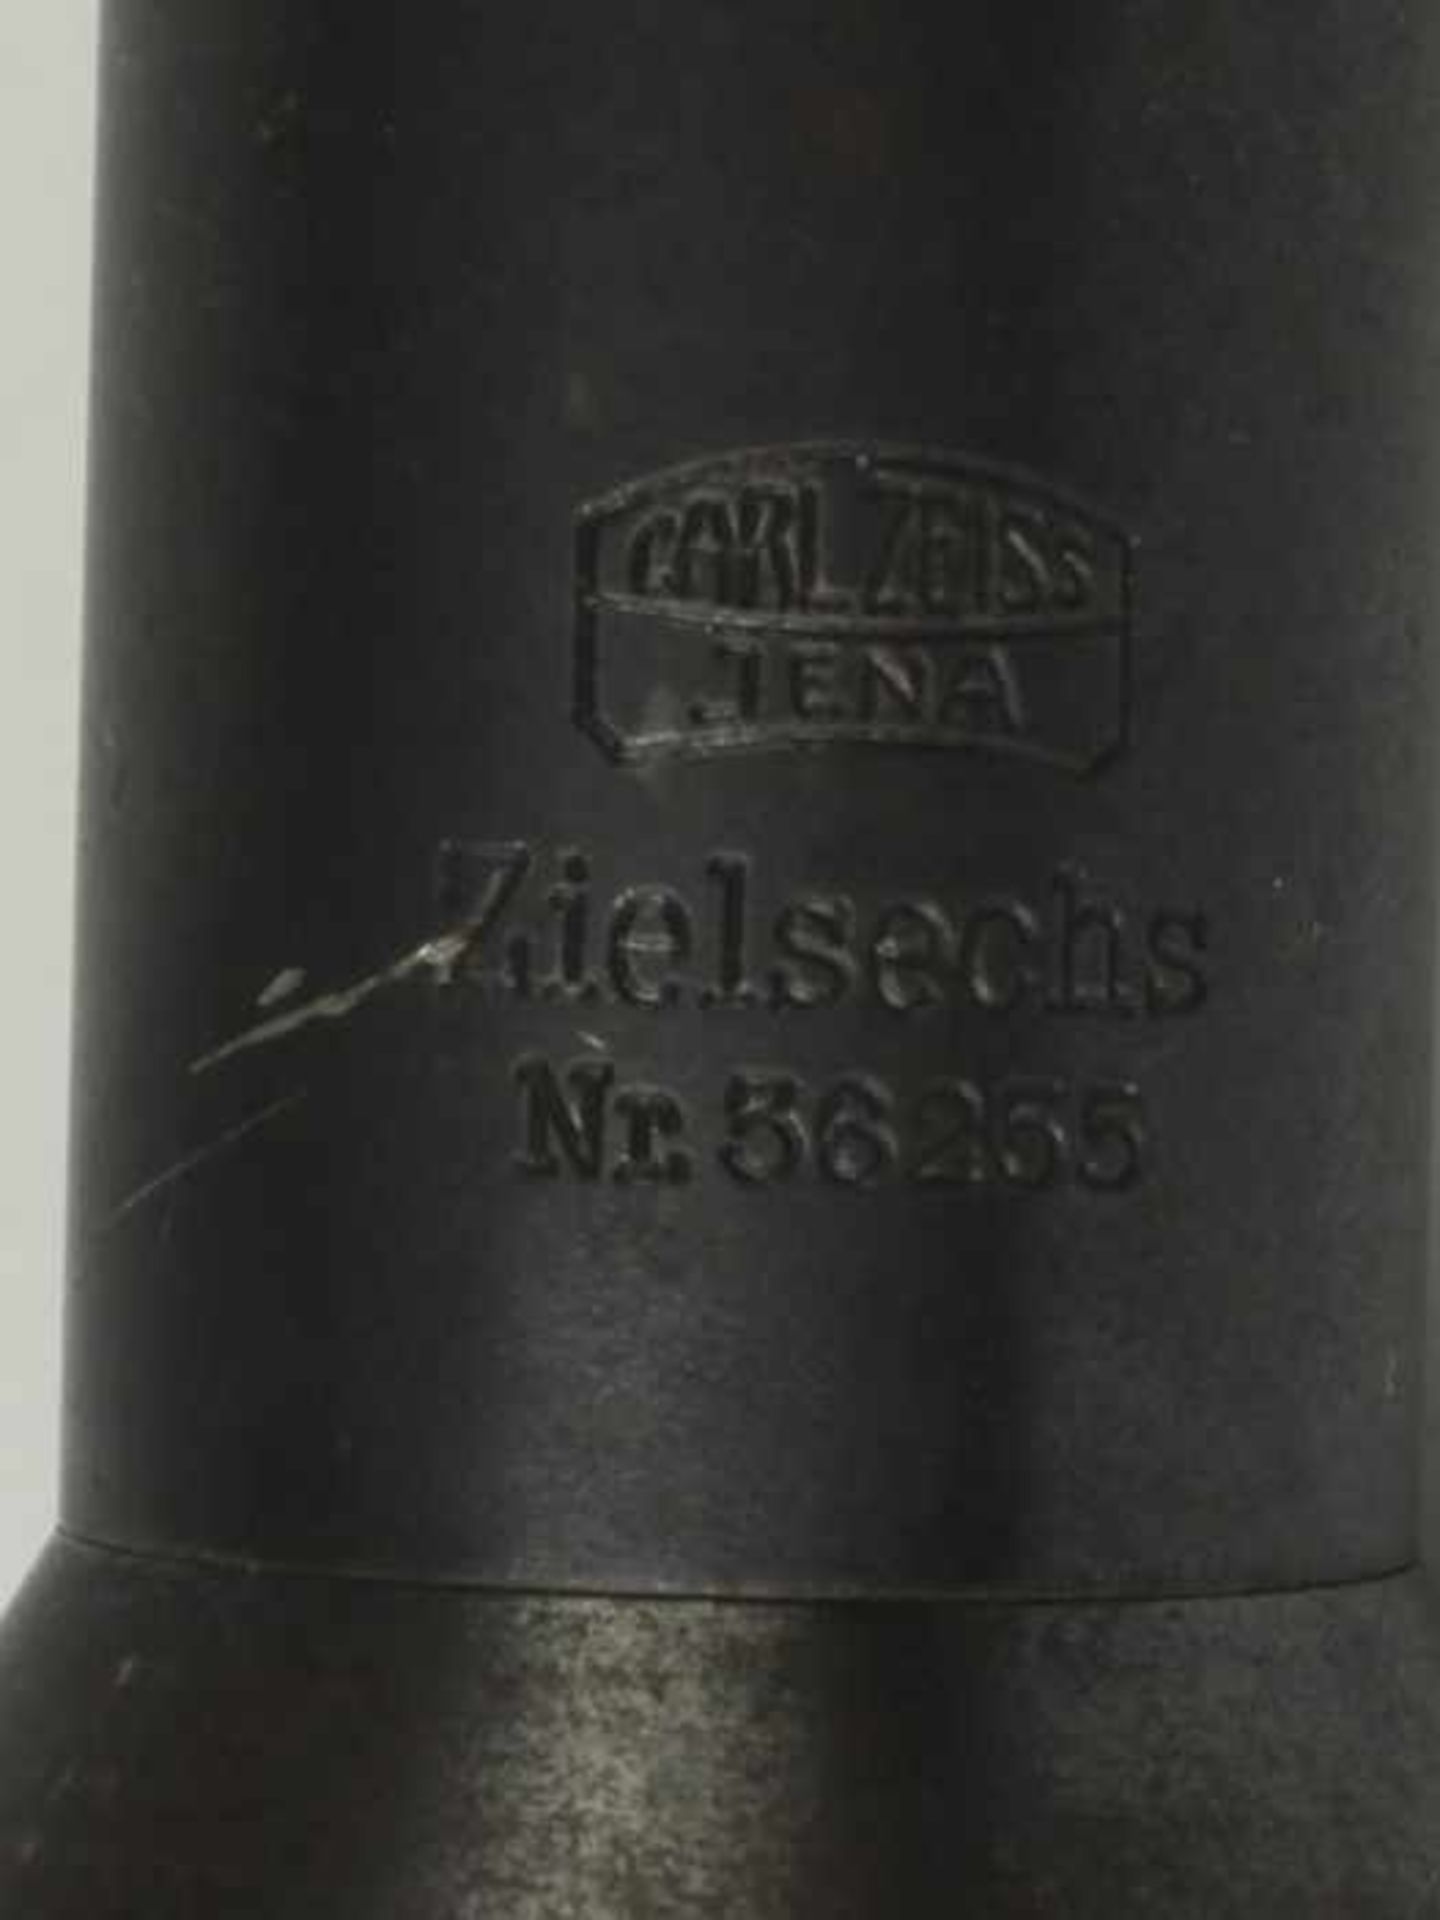 Zielfernrohr - ZeissCarl Zeiss Jena, Zielsechs, Nr. 36255, Metall-Tubus, grau lackiert, Objektiv, - Bild 4 aus 4